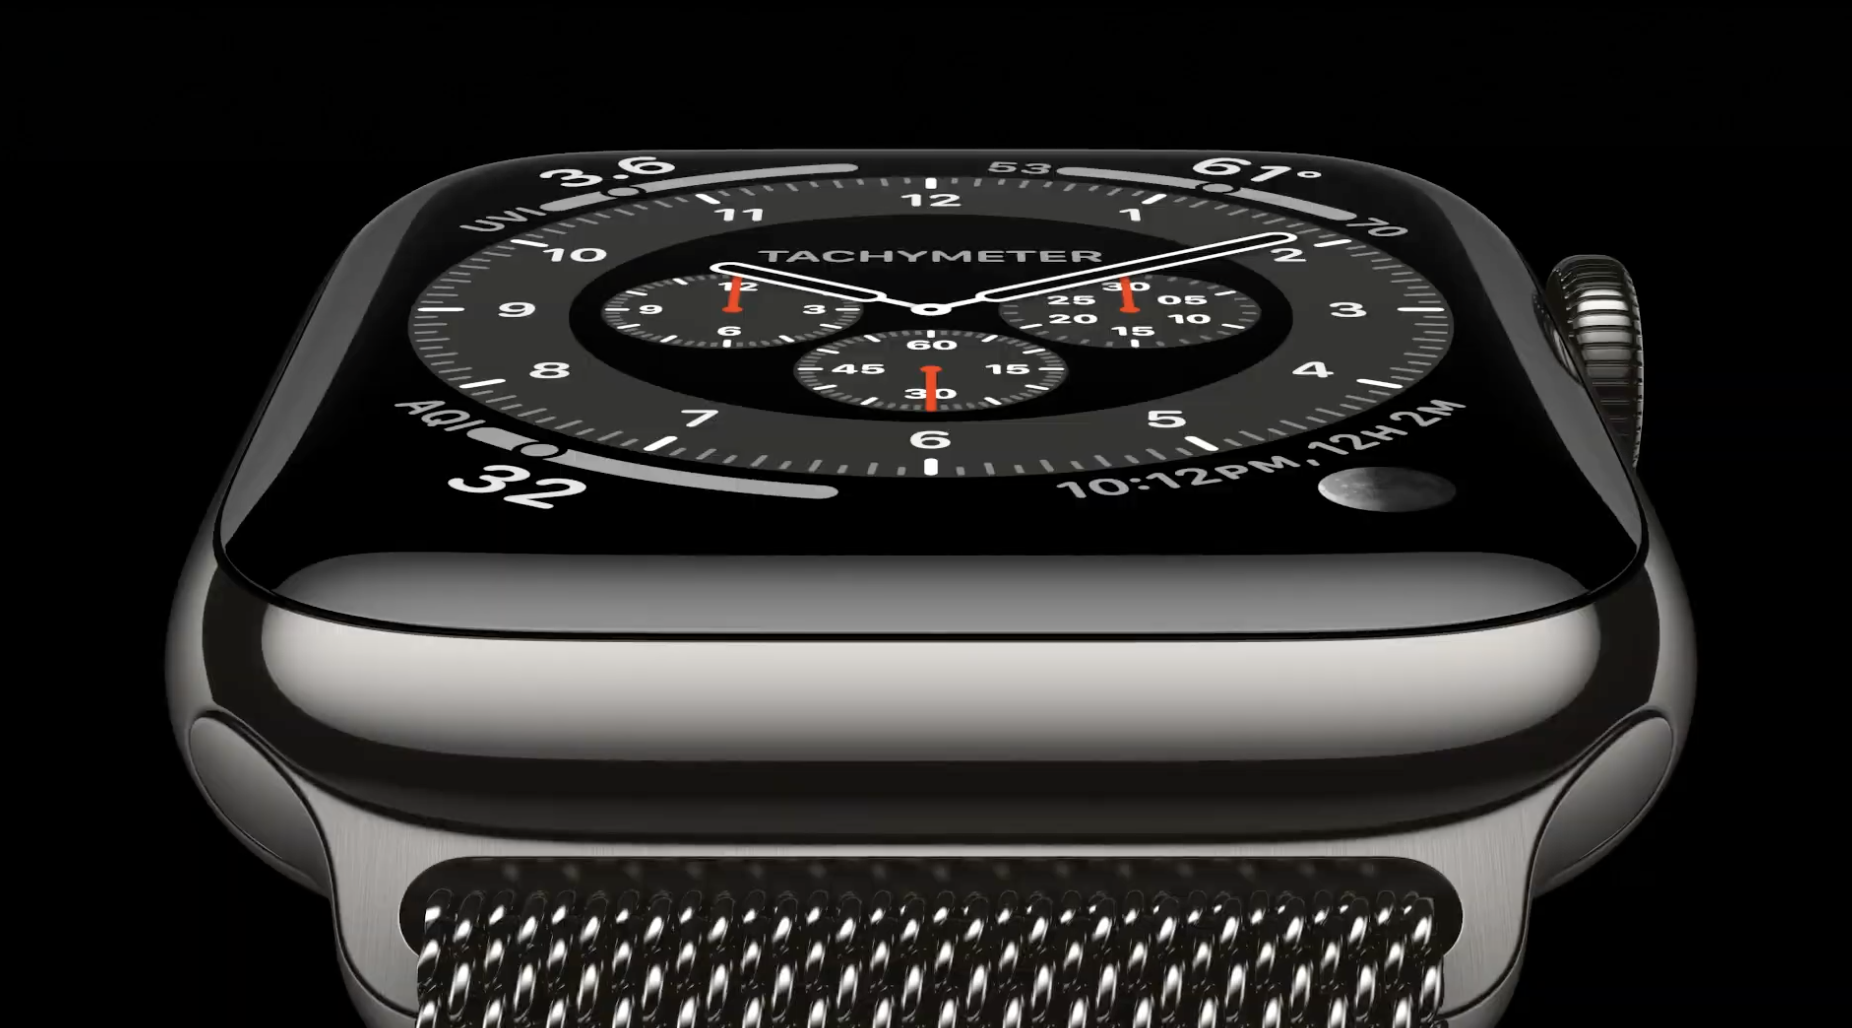 Apple series 6 44. Apple watch 6 44 mm. Apple watch Series 6 44mm. Apple watch se 44mm. Apple watch se 2020.